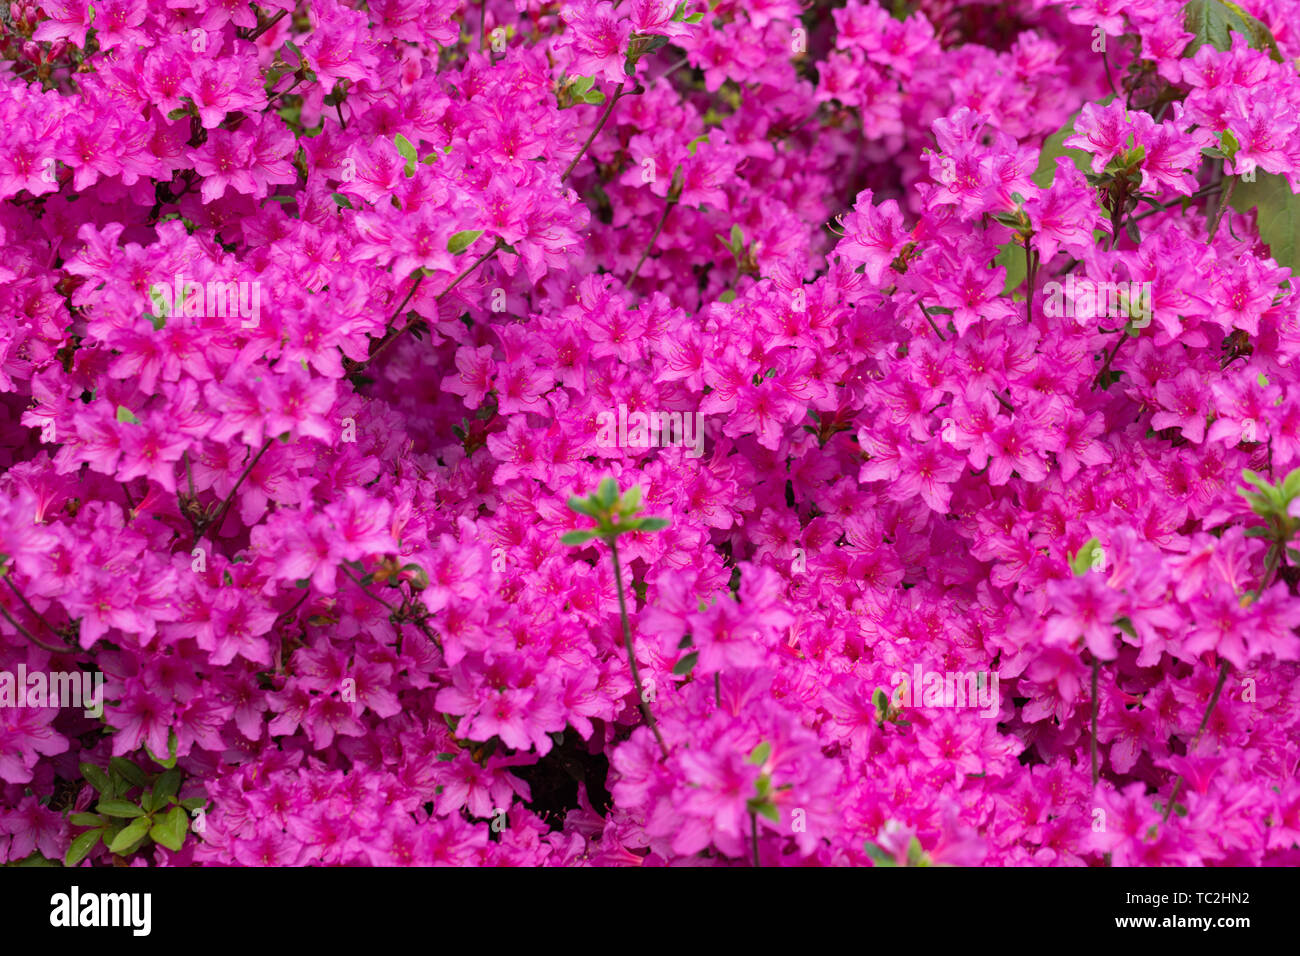 Pink azalea blossom. Background full of flowers. - Image Stock Photo